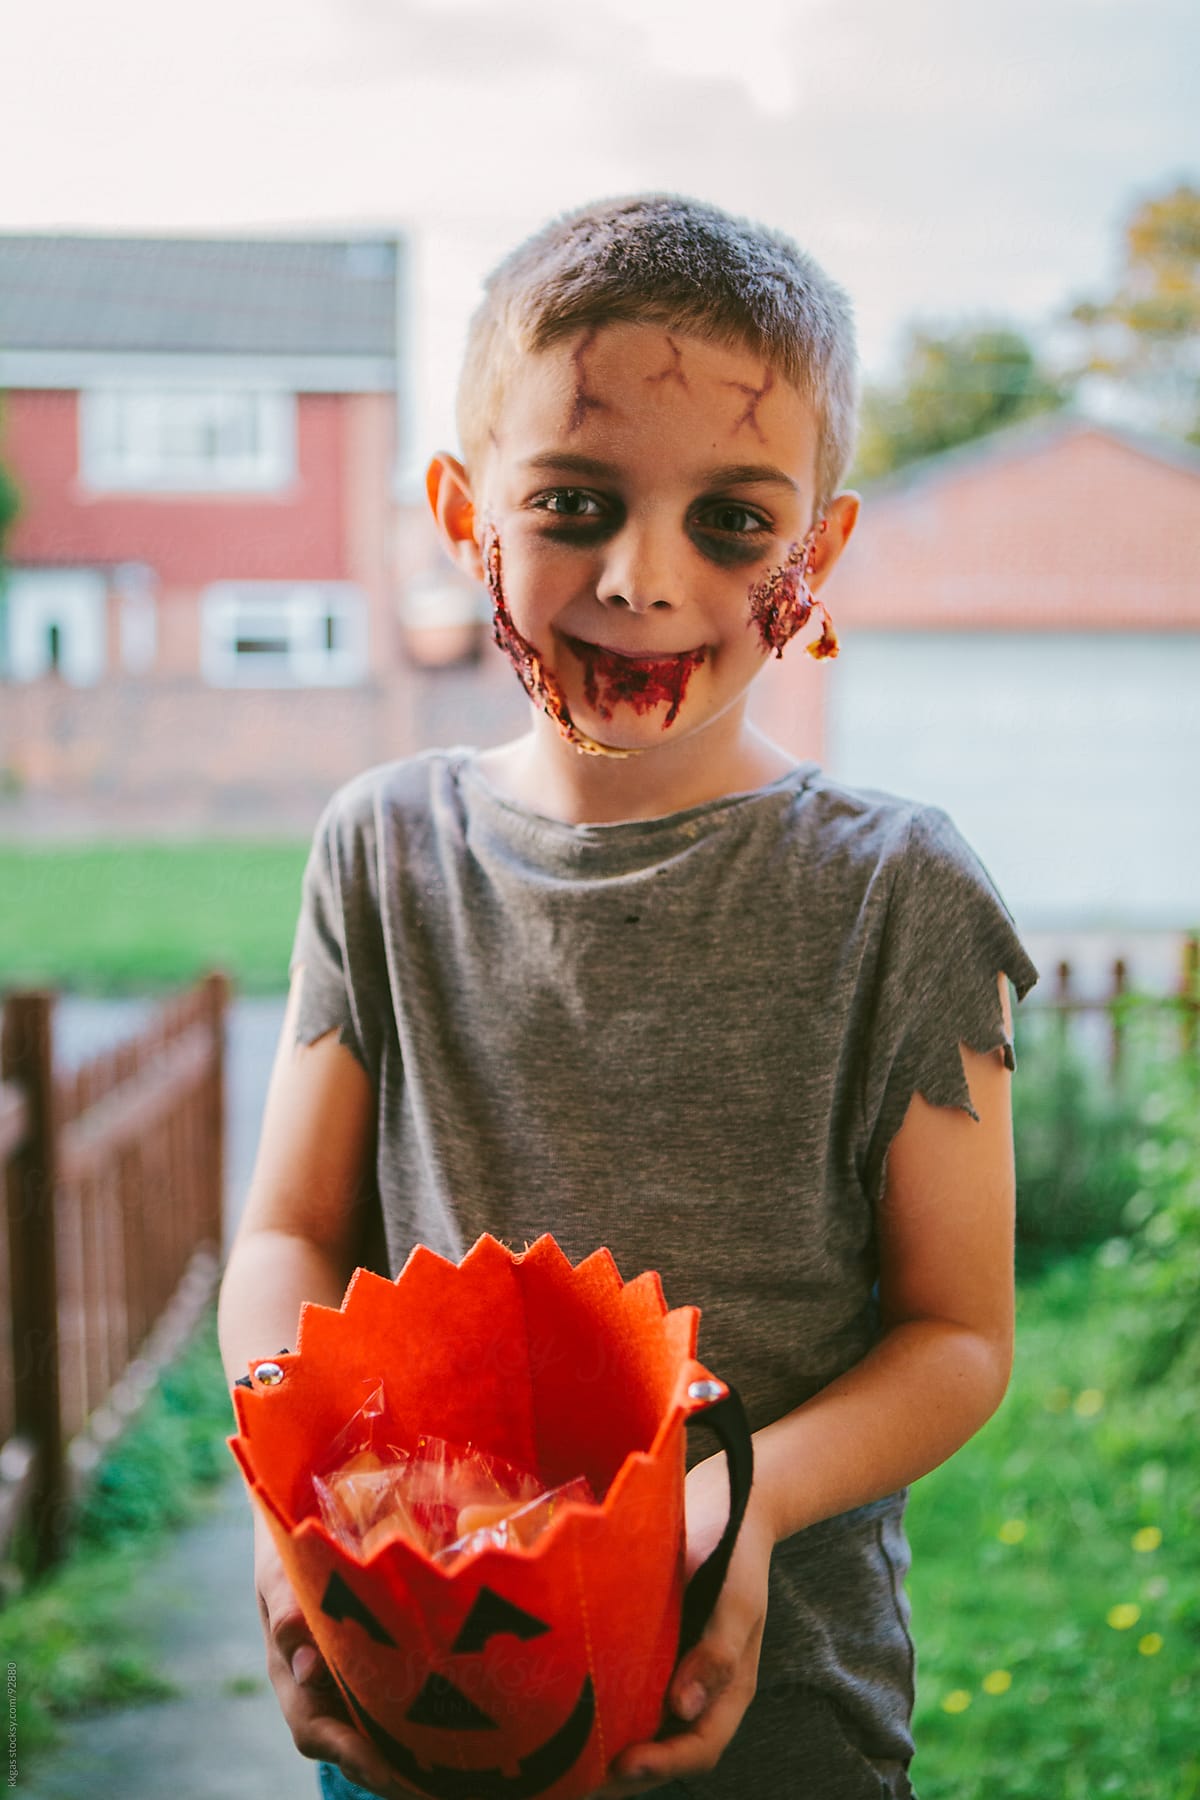 Little boy in Zombie Halloween costume